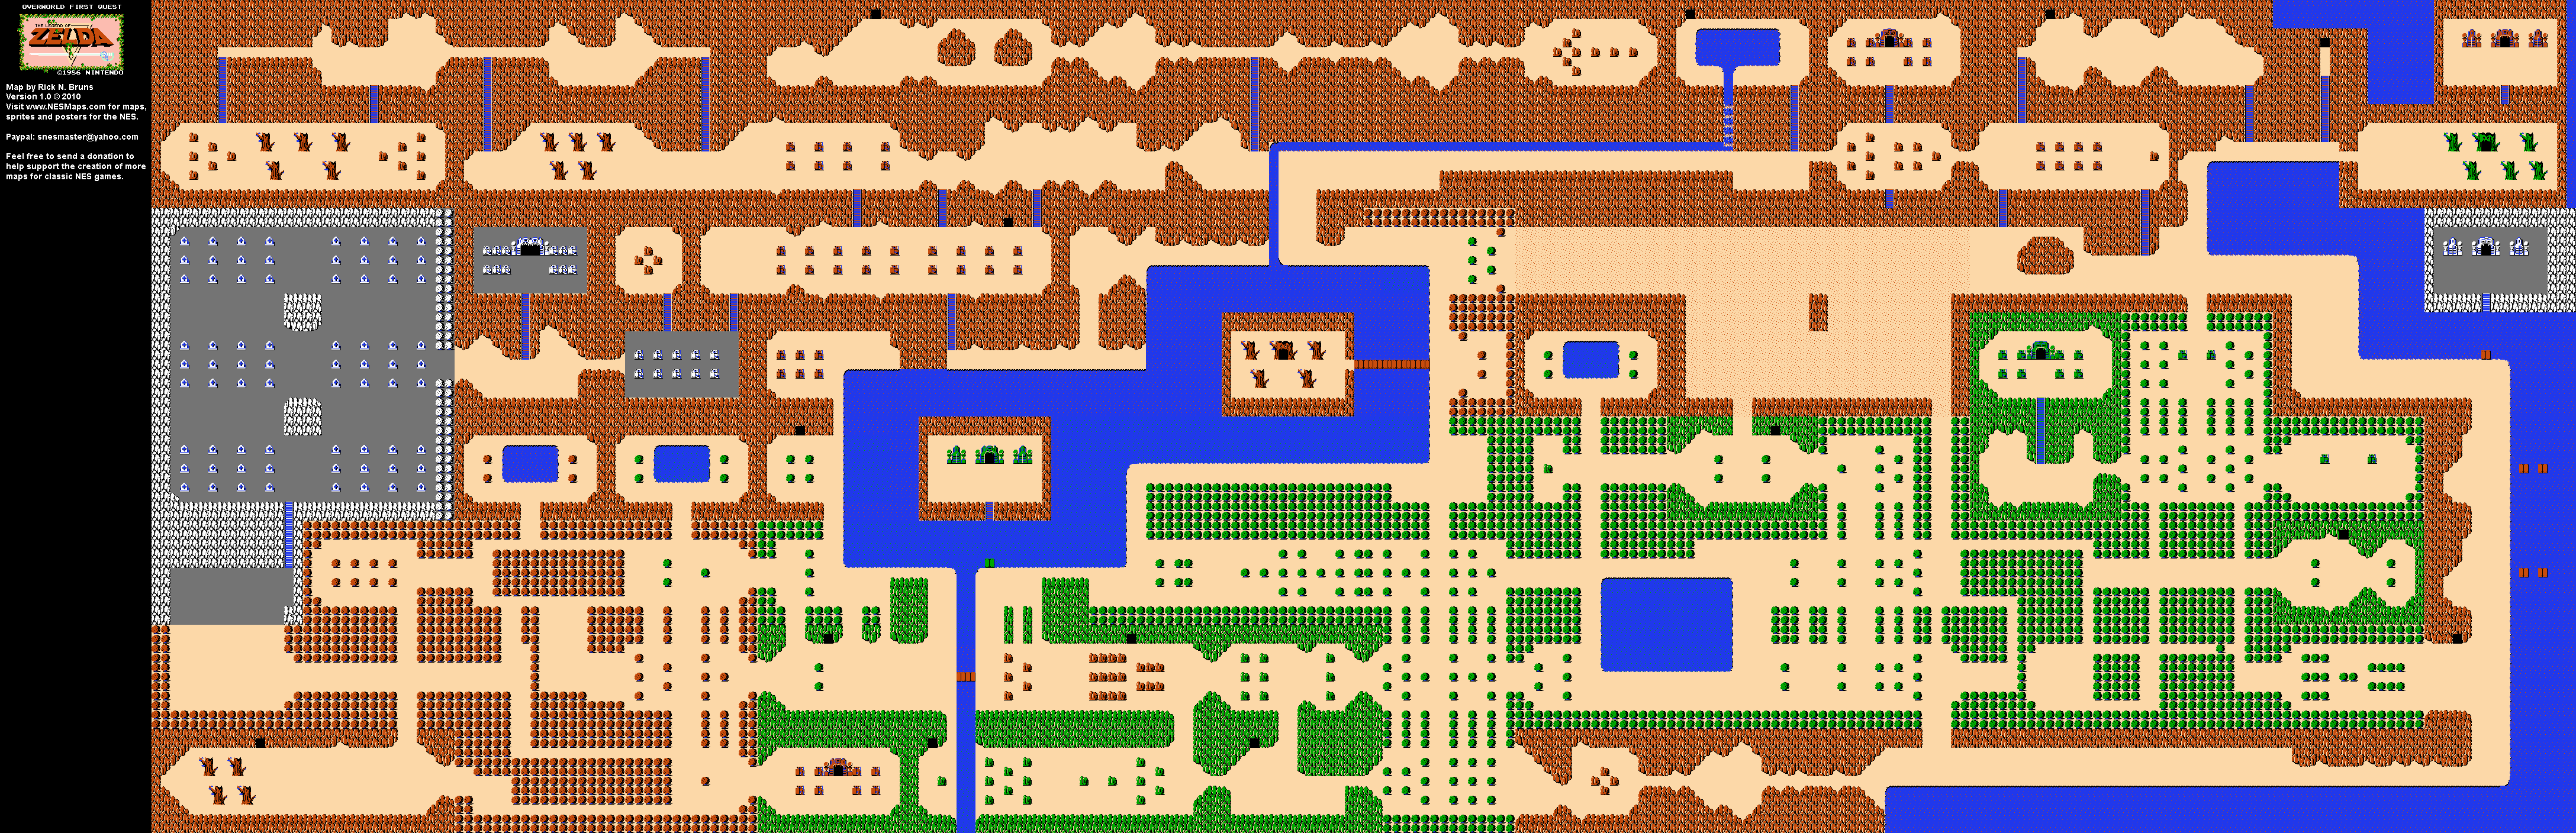 The Legend of Zelda - Overworld Quest 1 - NES Map BG